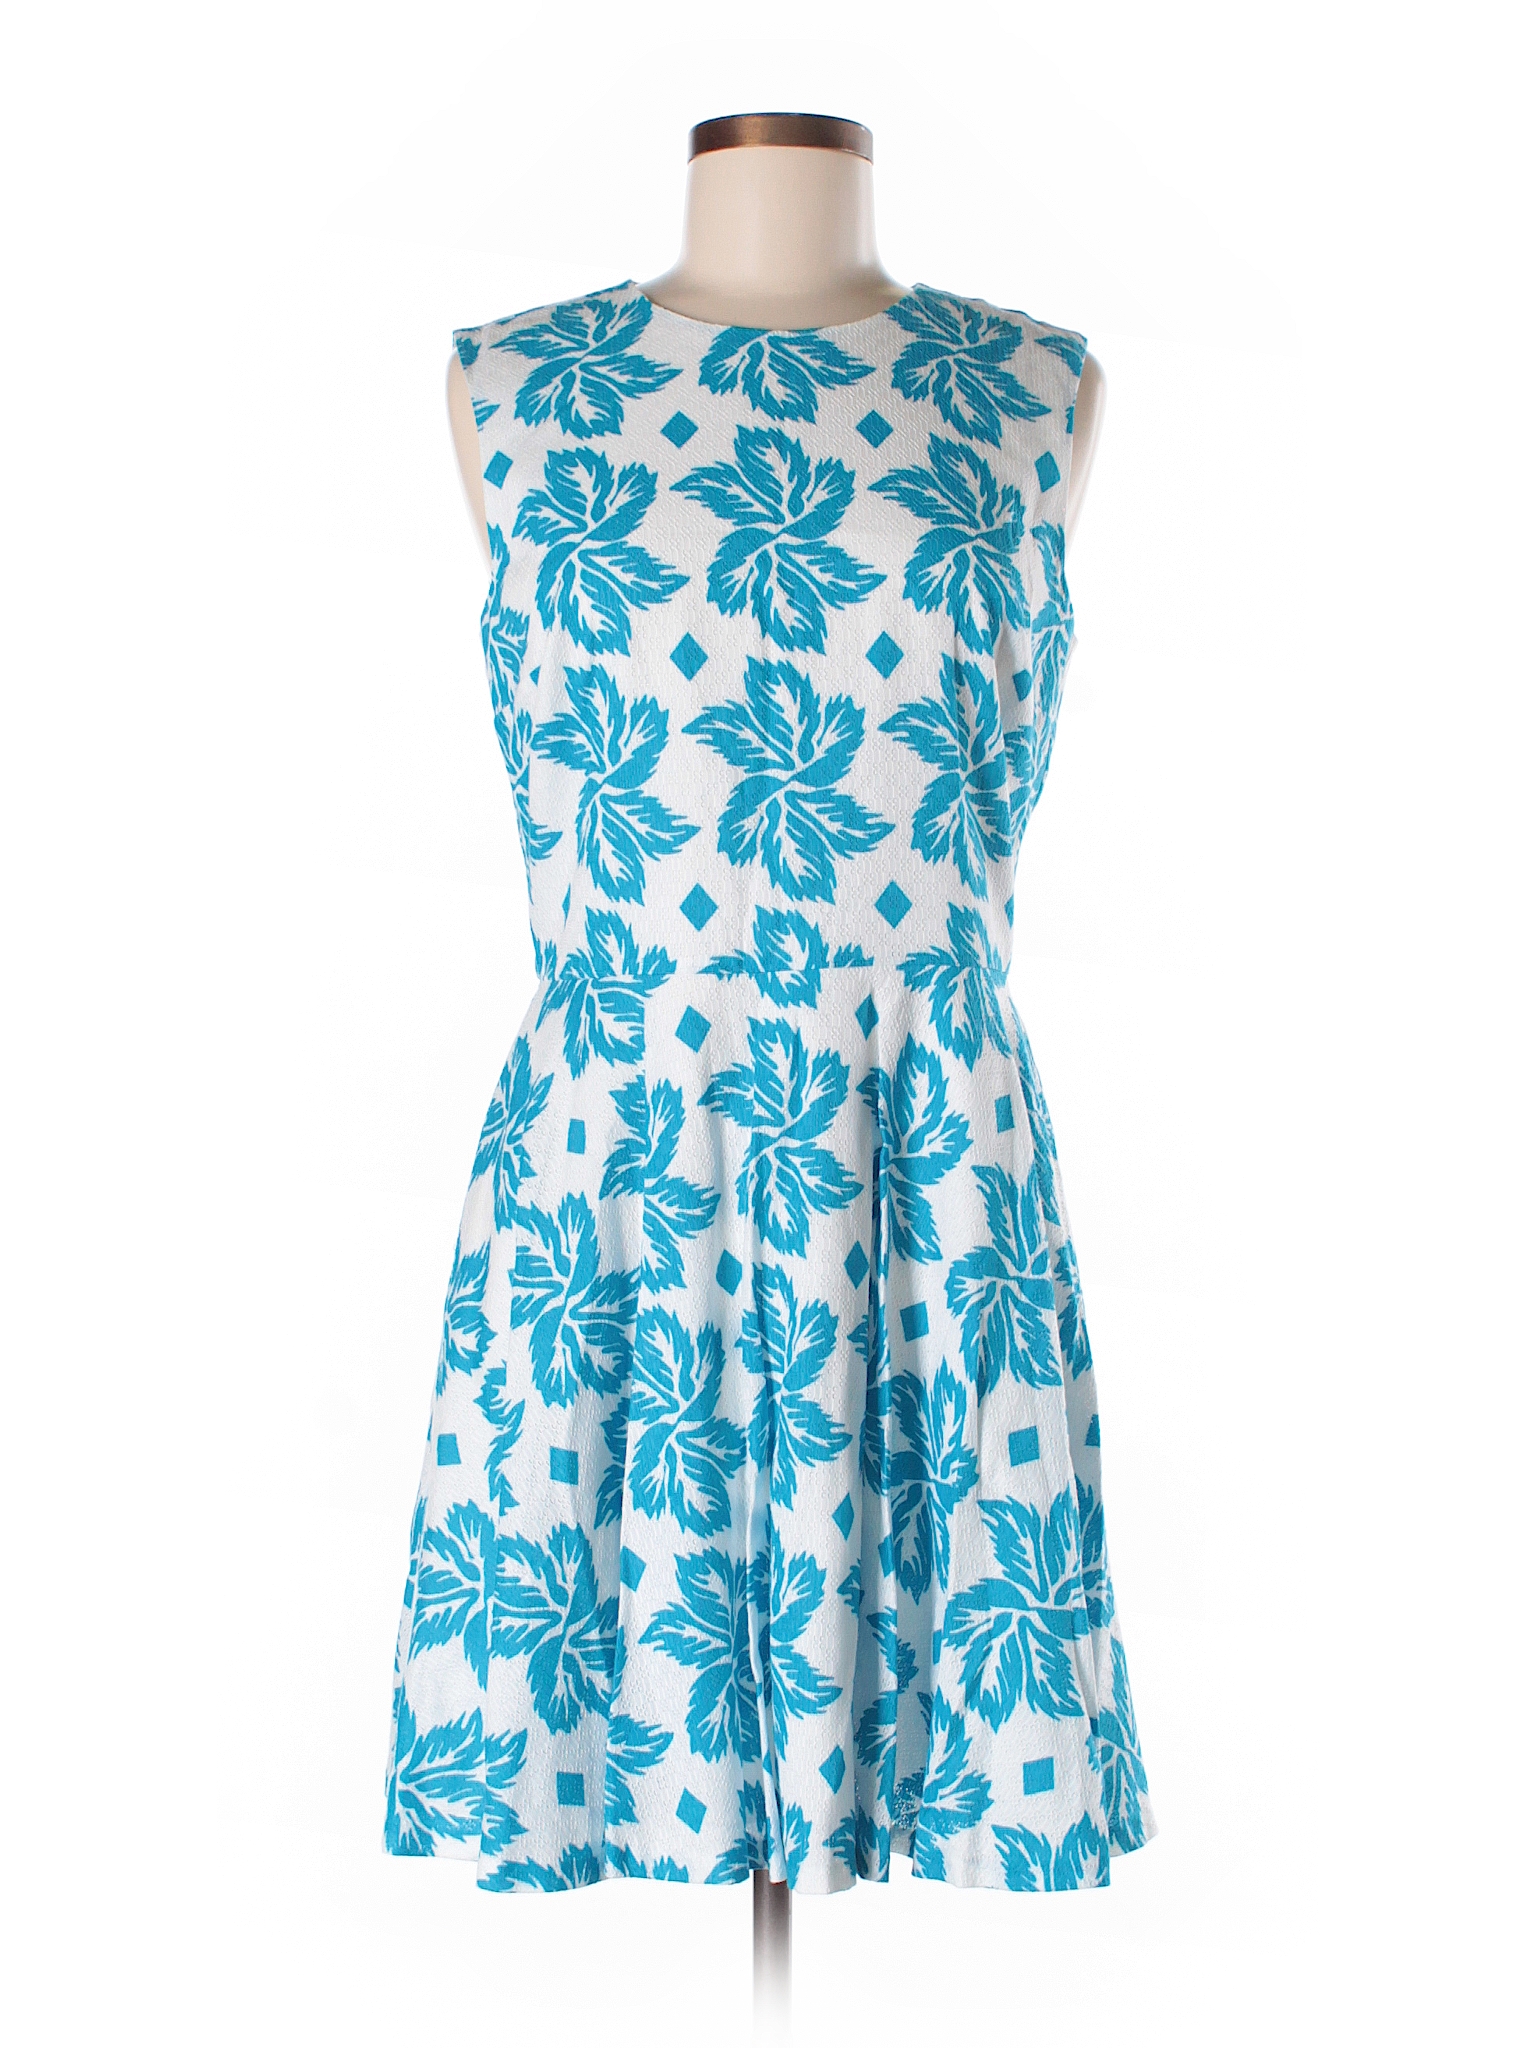 Diane von Furstenberg 100% Cotton Print Blue Casual Dress Size 8 - 75% ...